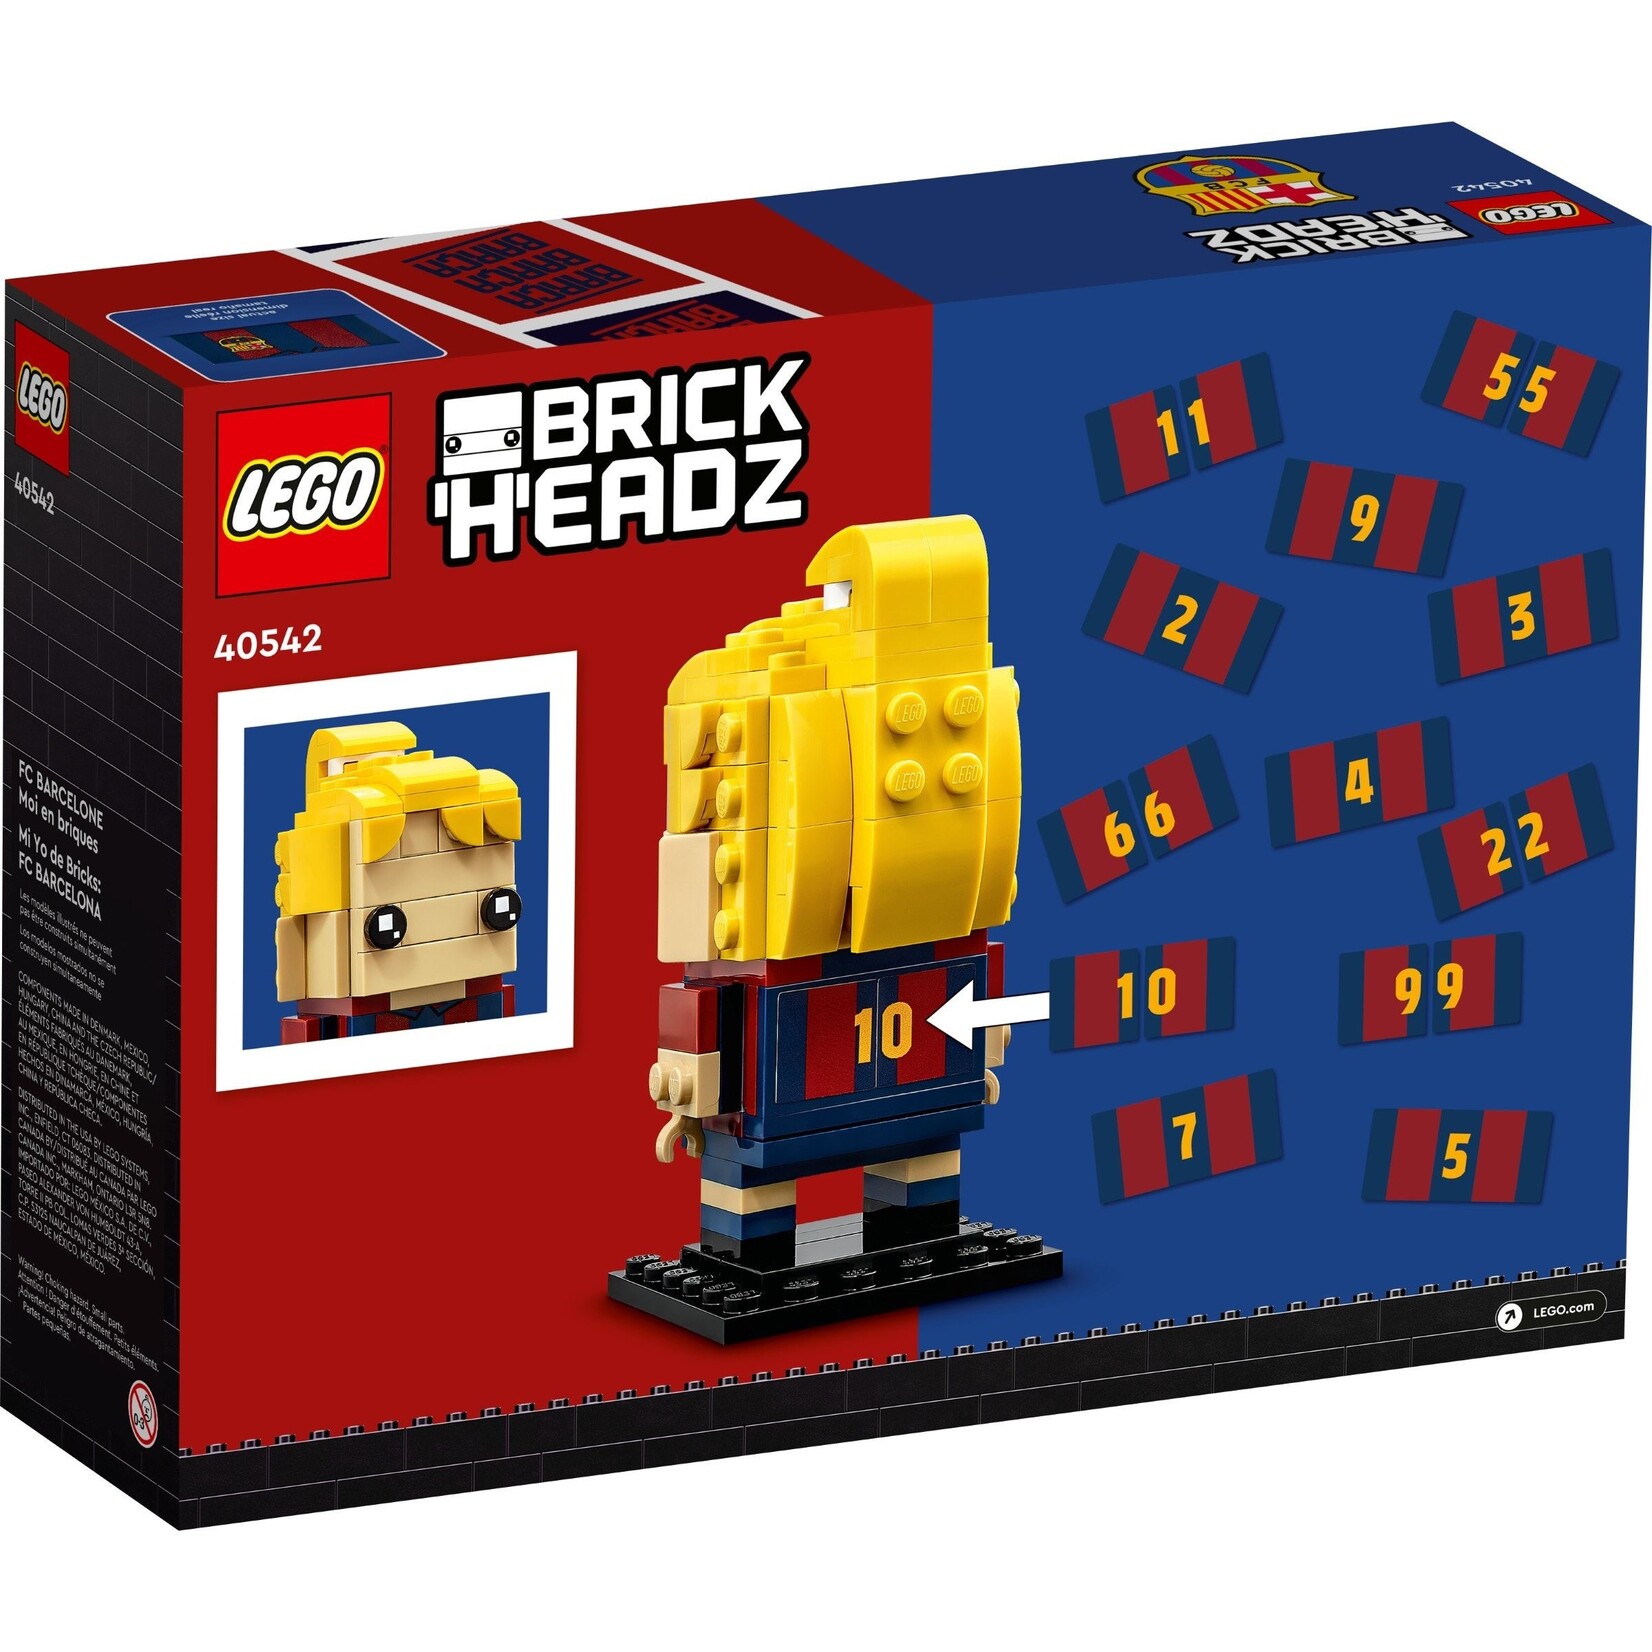 LEGO Maak van mij stenen FC Barcelona - 40542